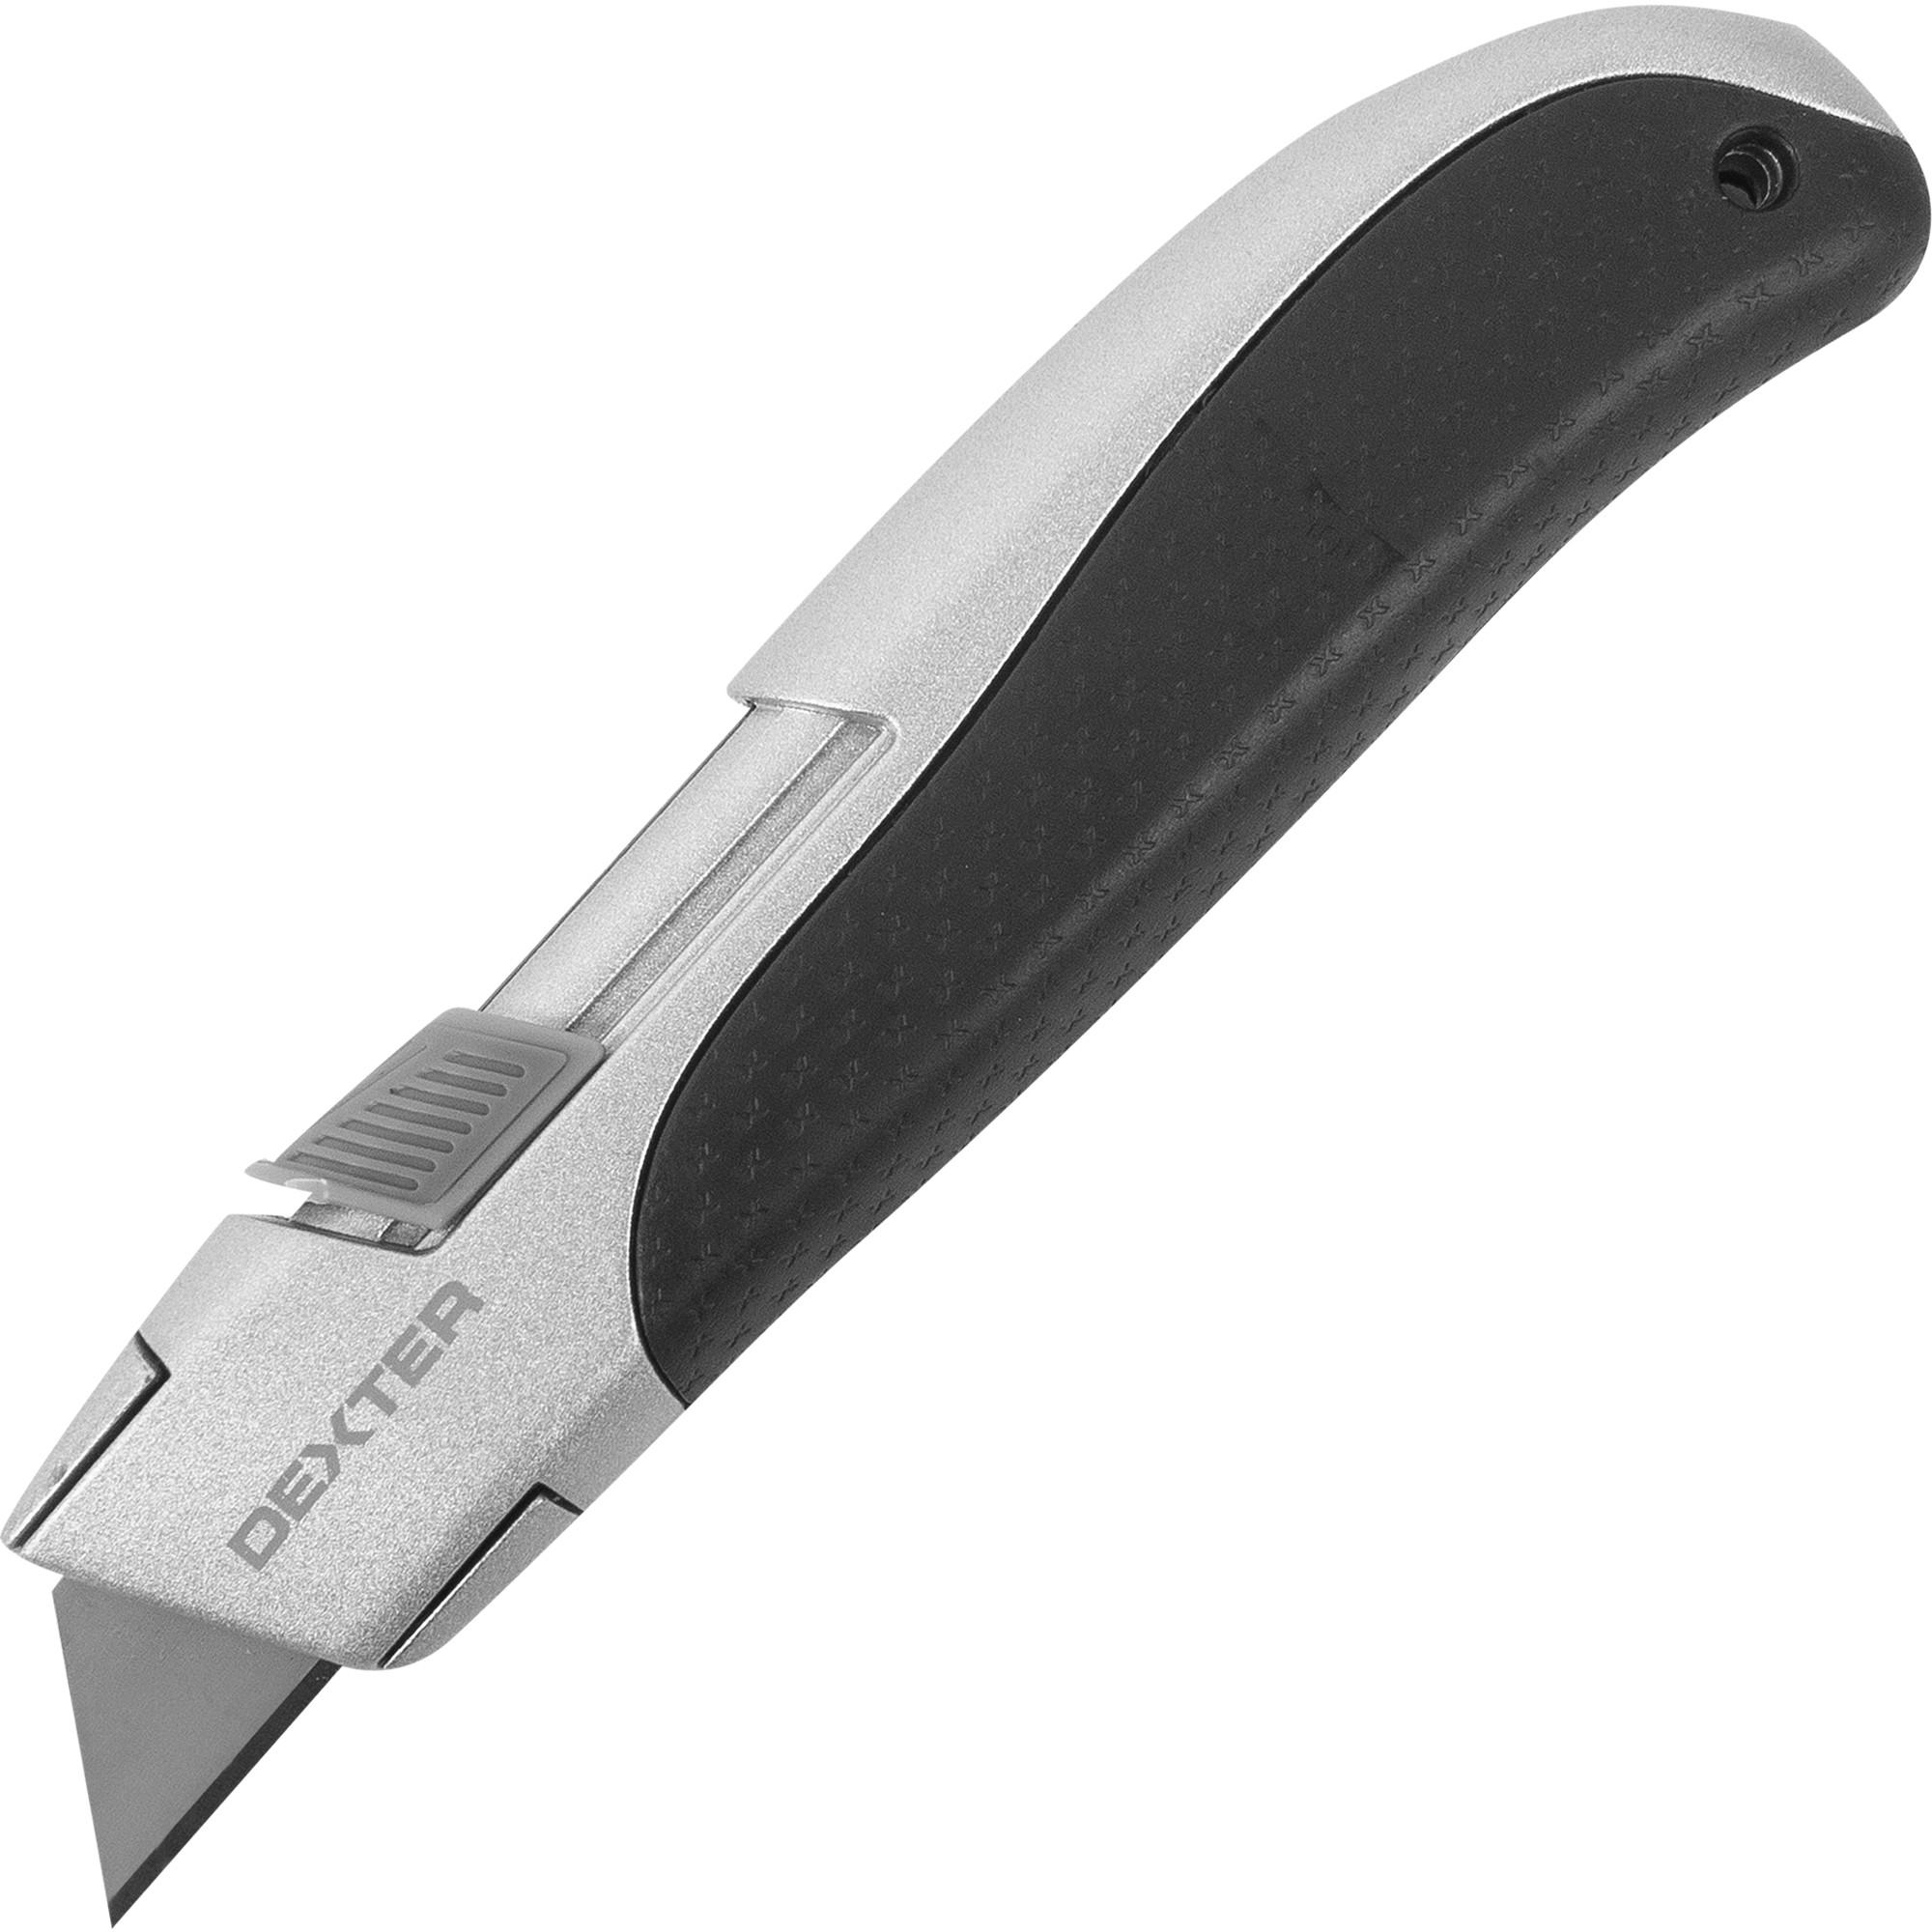 Безопасный нож Dexter 21 мм –   по цене 1460 тенге .